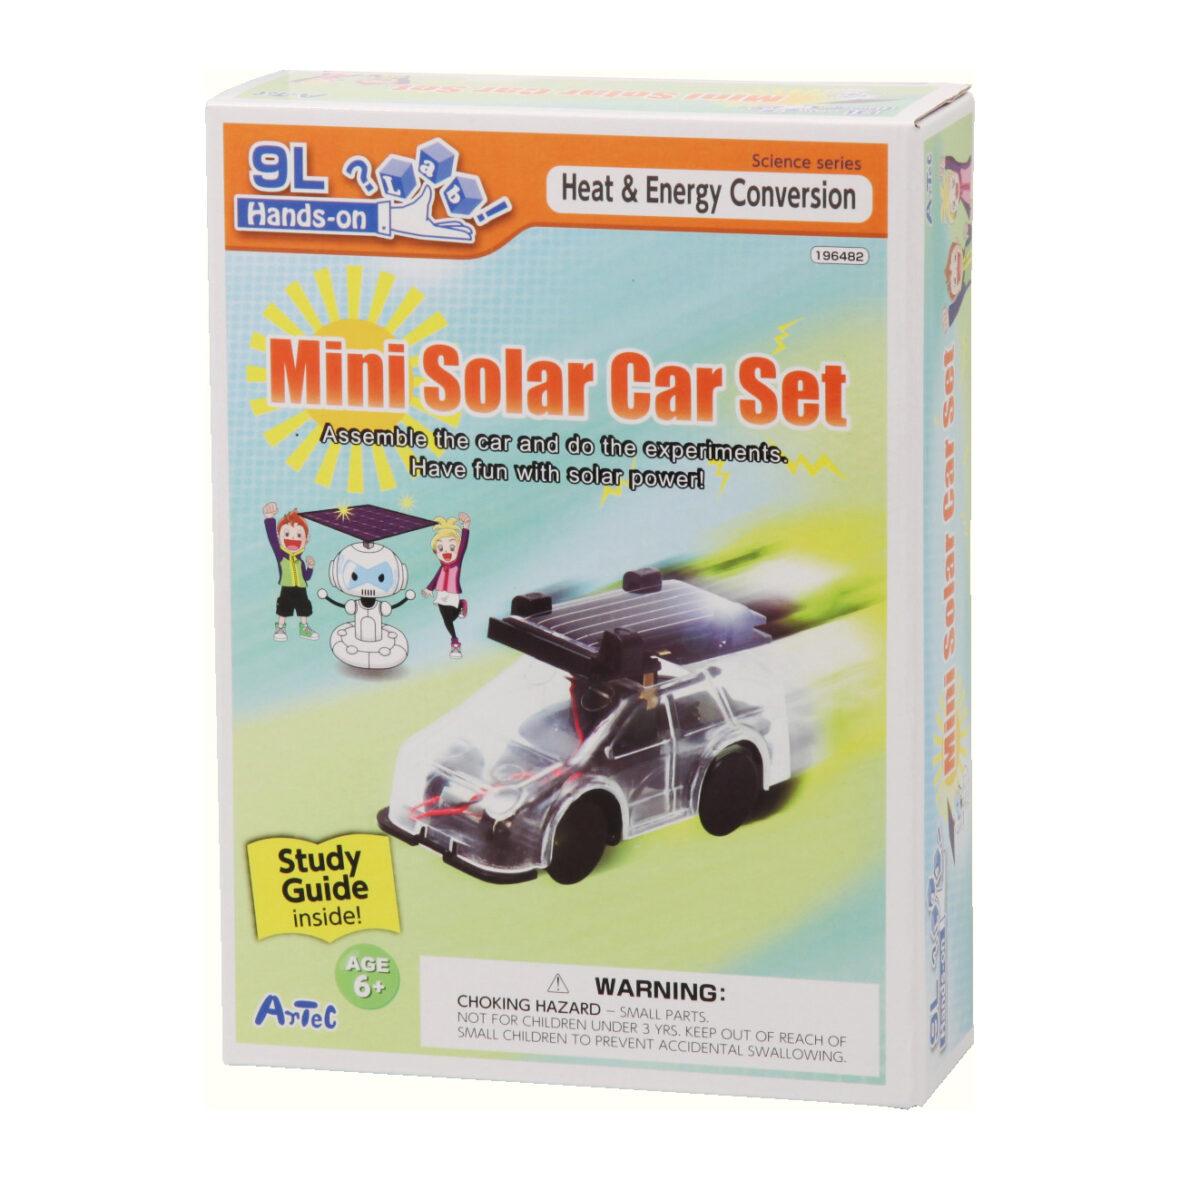 Vyrob si solárne autíčko